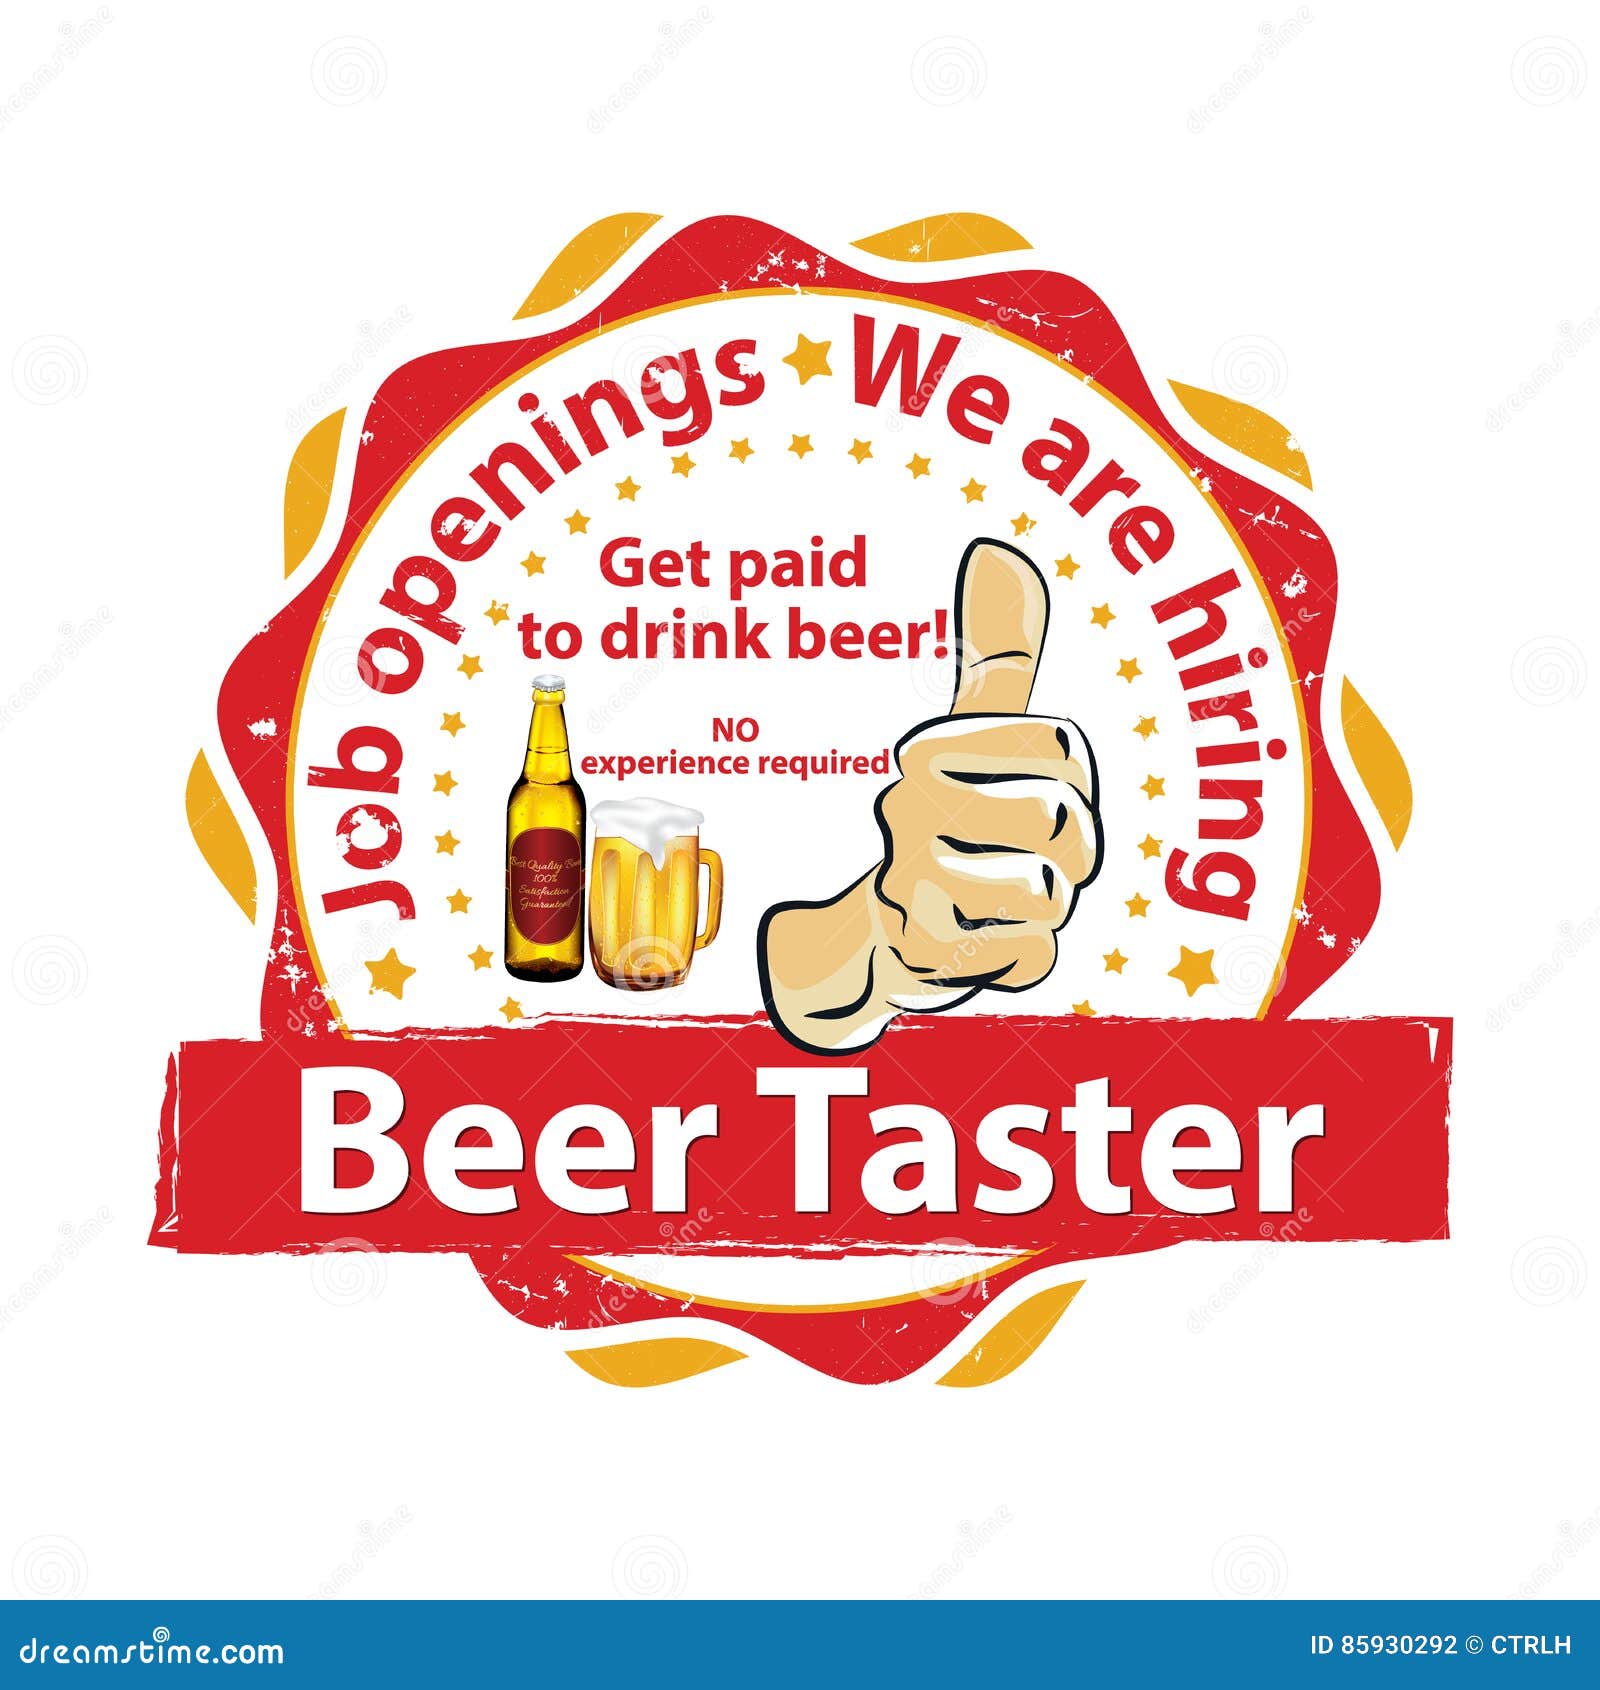 professional beer taster. job openings.